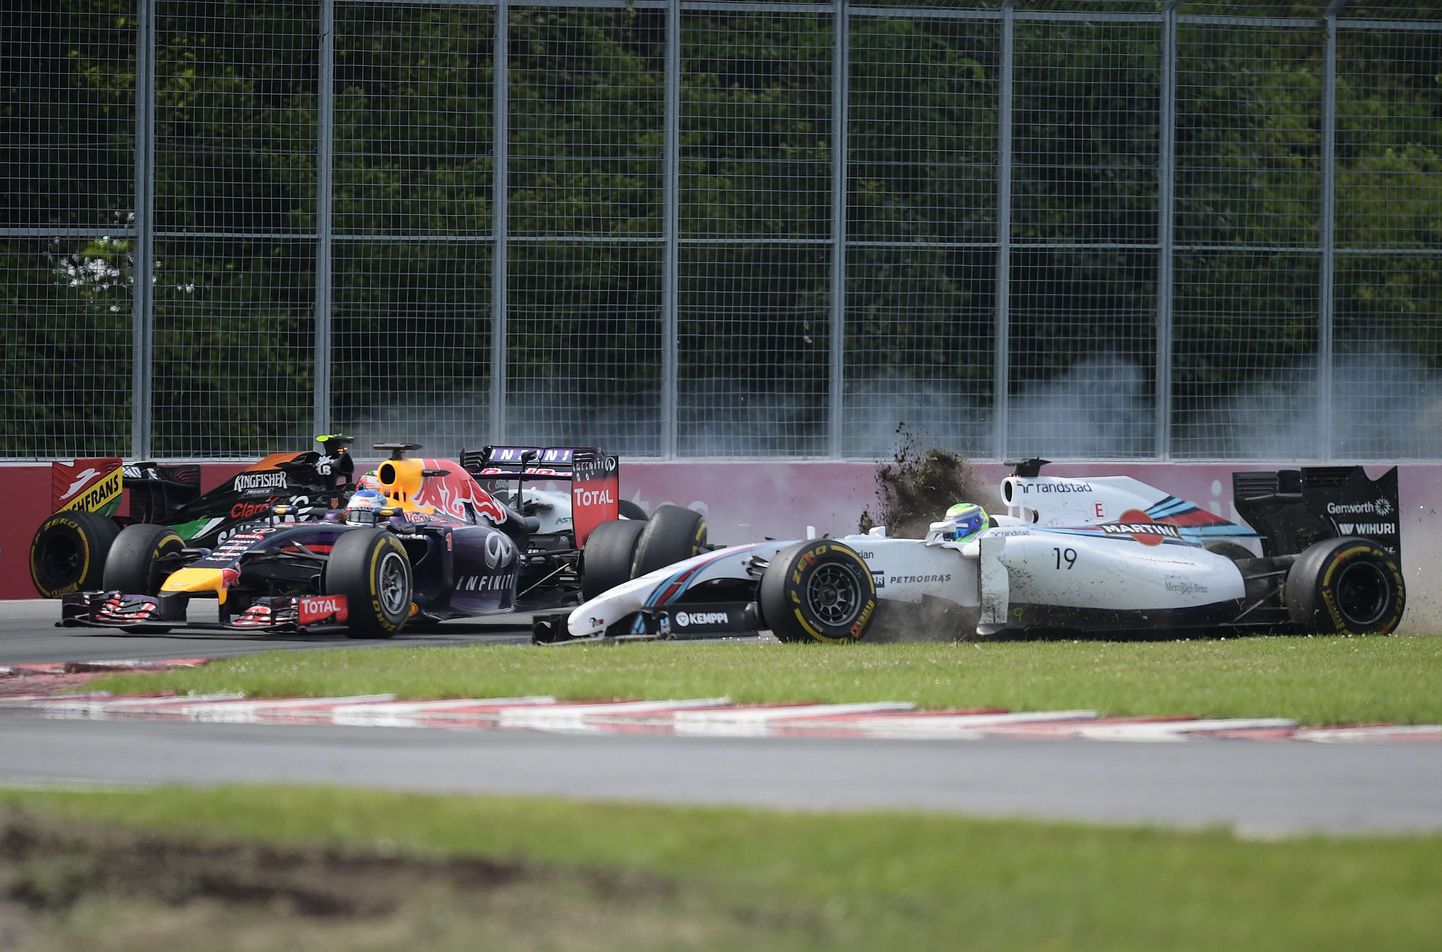 Felipe Massa ja Sergio Perez sattusid Kanada vormel-1 etapi lõpuringil ränka avariisse.